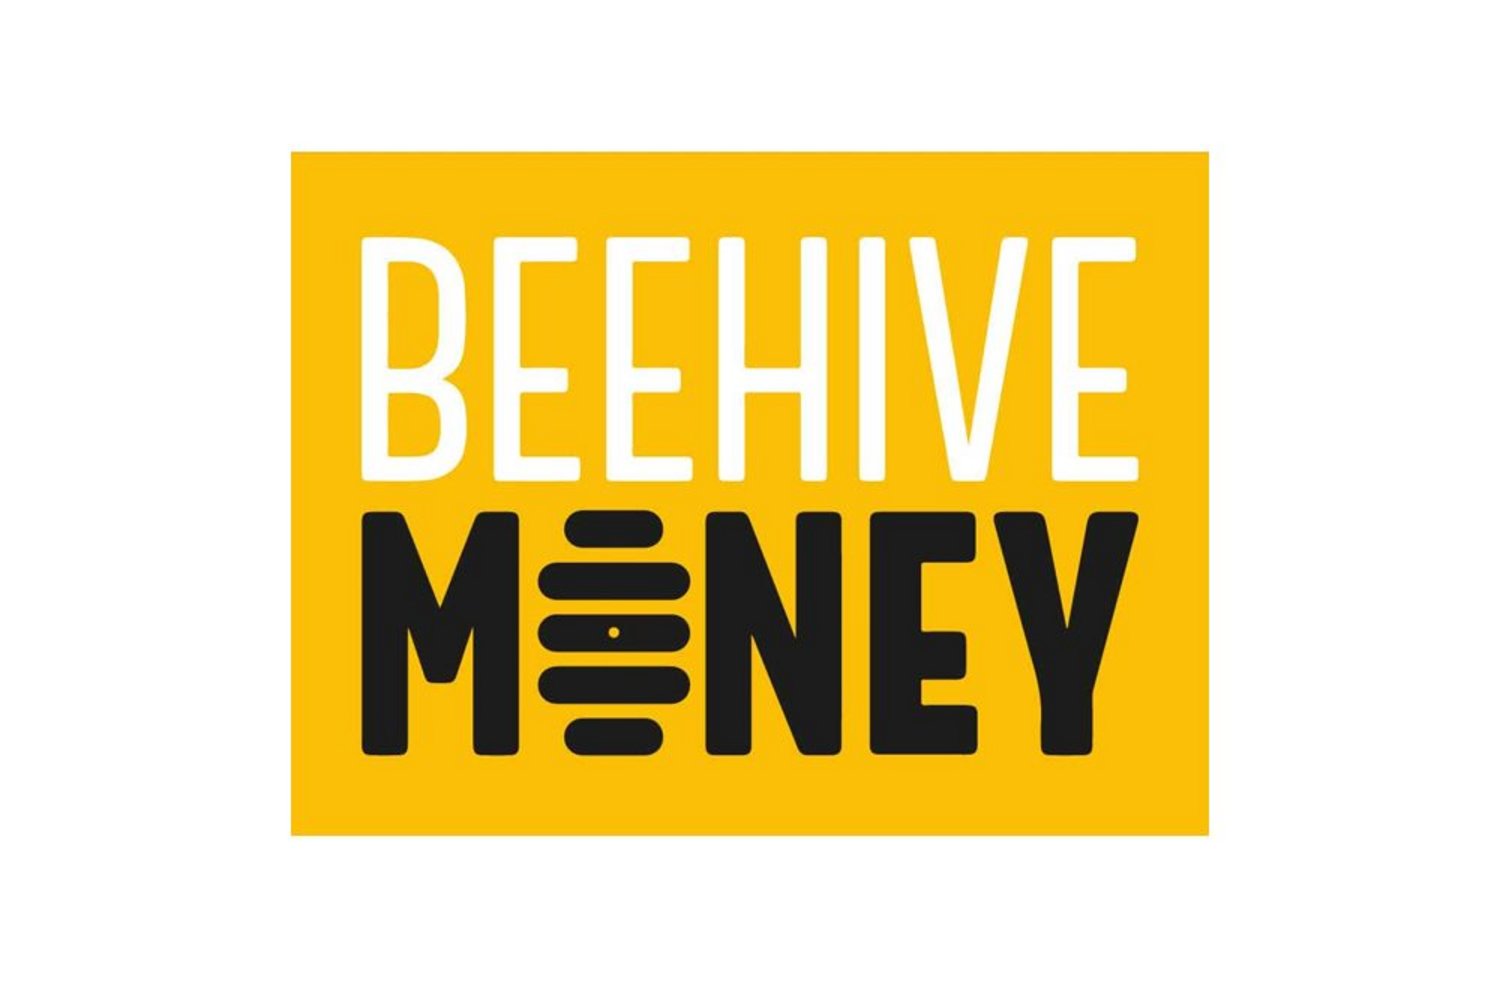 The BeeHive Money Logo